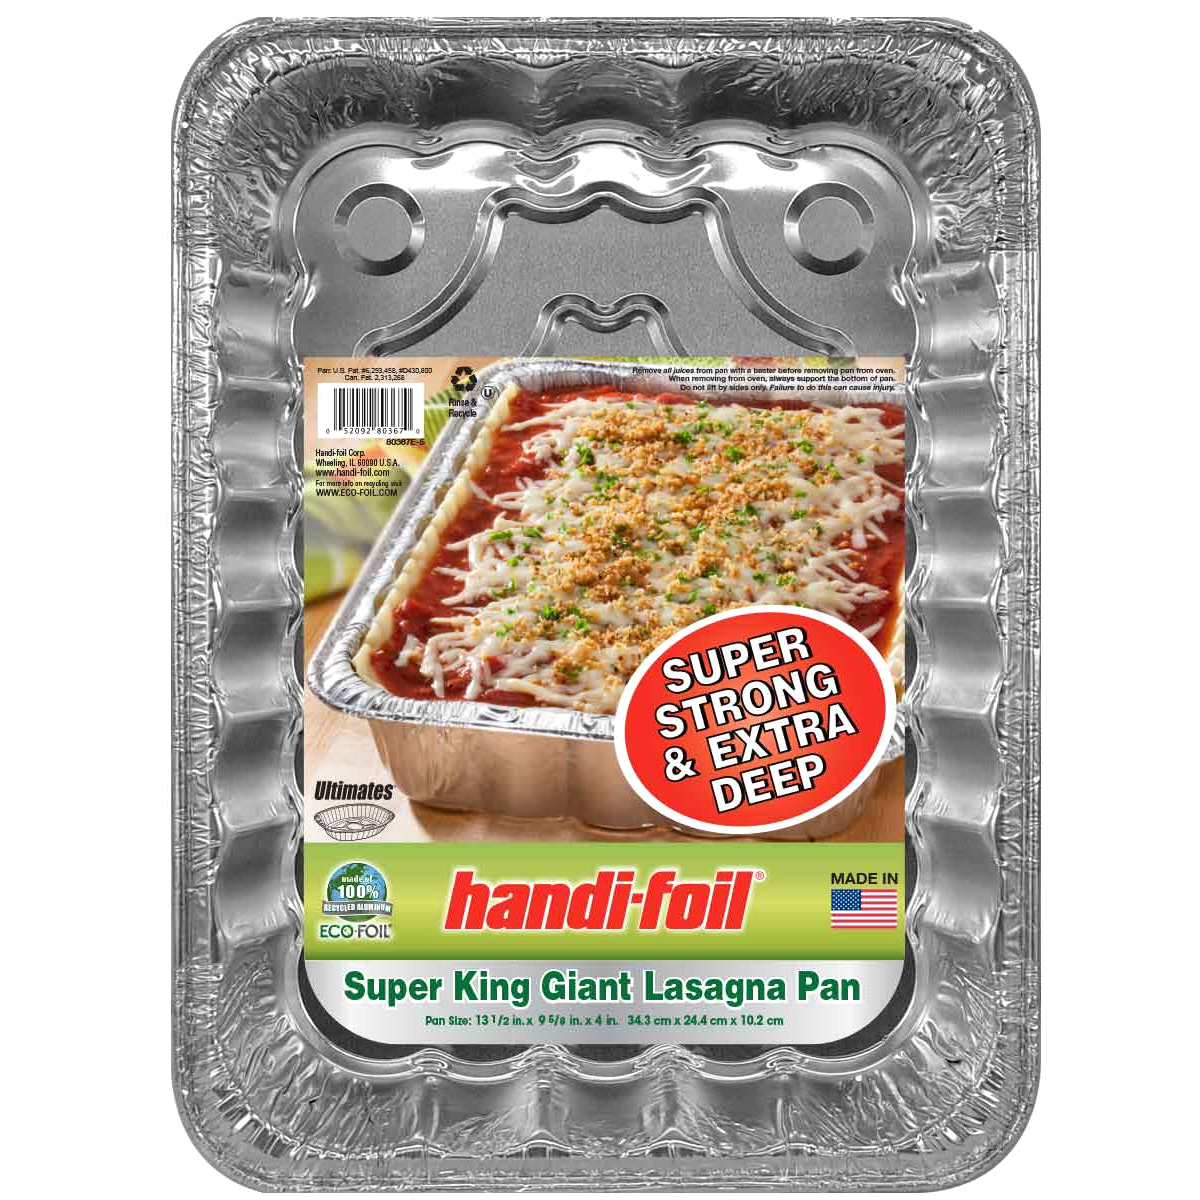 slide 1 of 1, Handi-foil Super King Giant Lasagna Pan, 1 ct